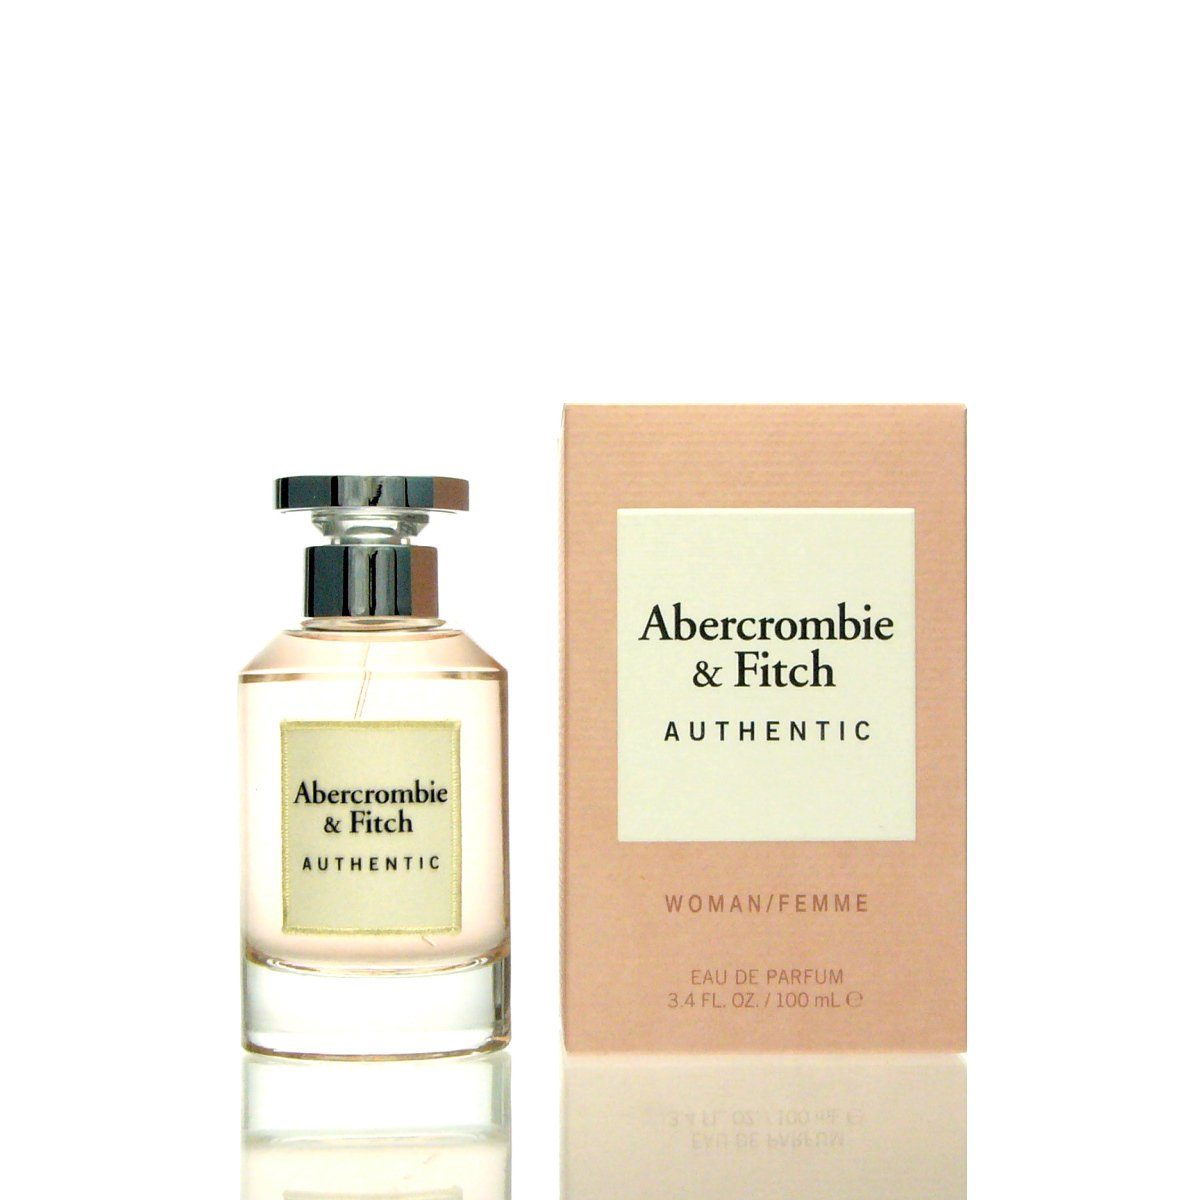 Abercombie Women Fitch de Eau de and & Fitch Parfum ml Abercrombie Authentic Fitch & Parfum 100 Eau Abercrombie